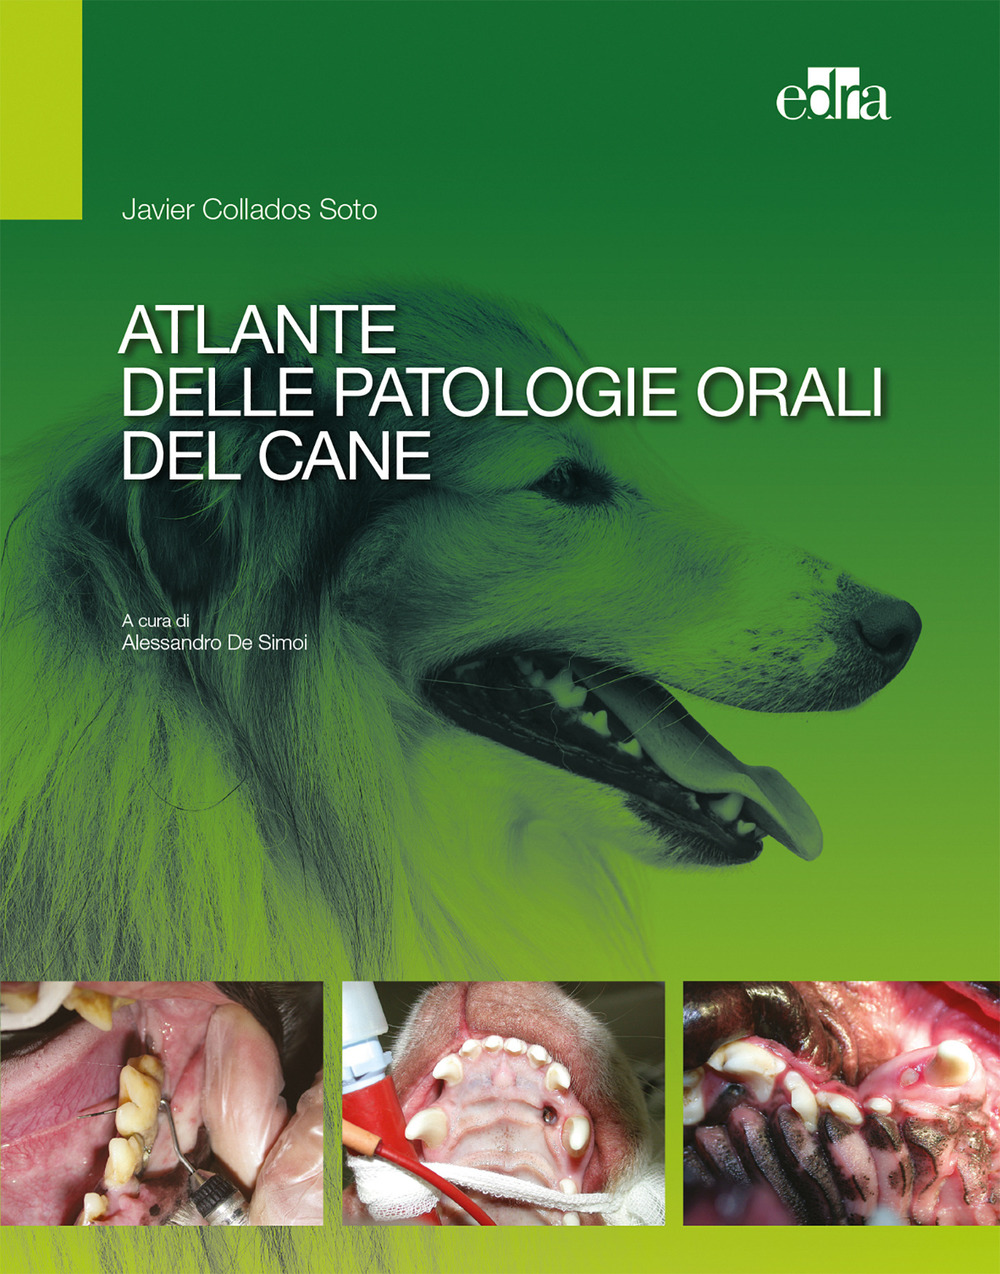 Atlante delle patologie orali del cane